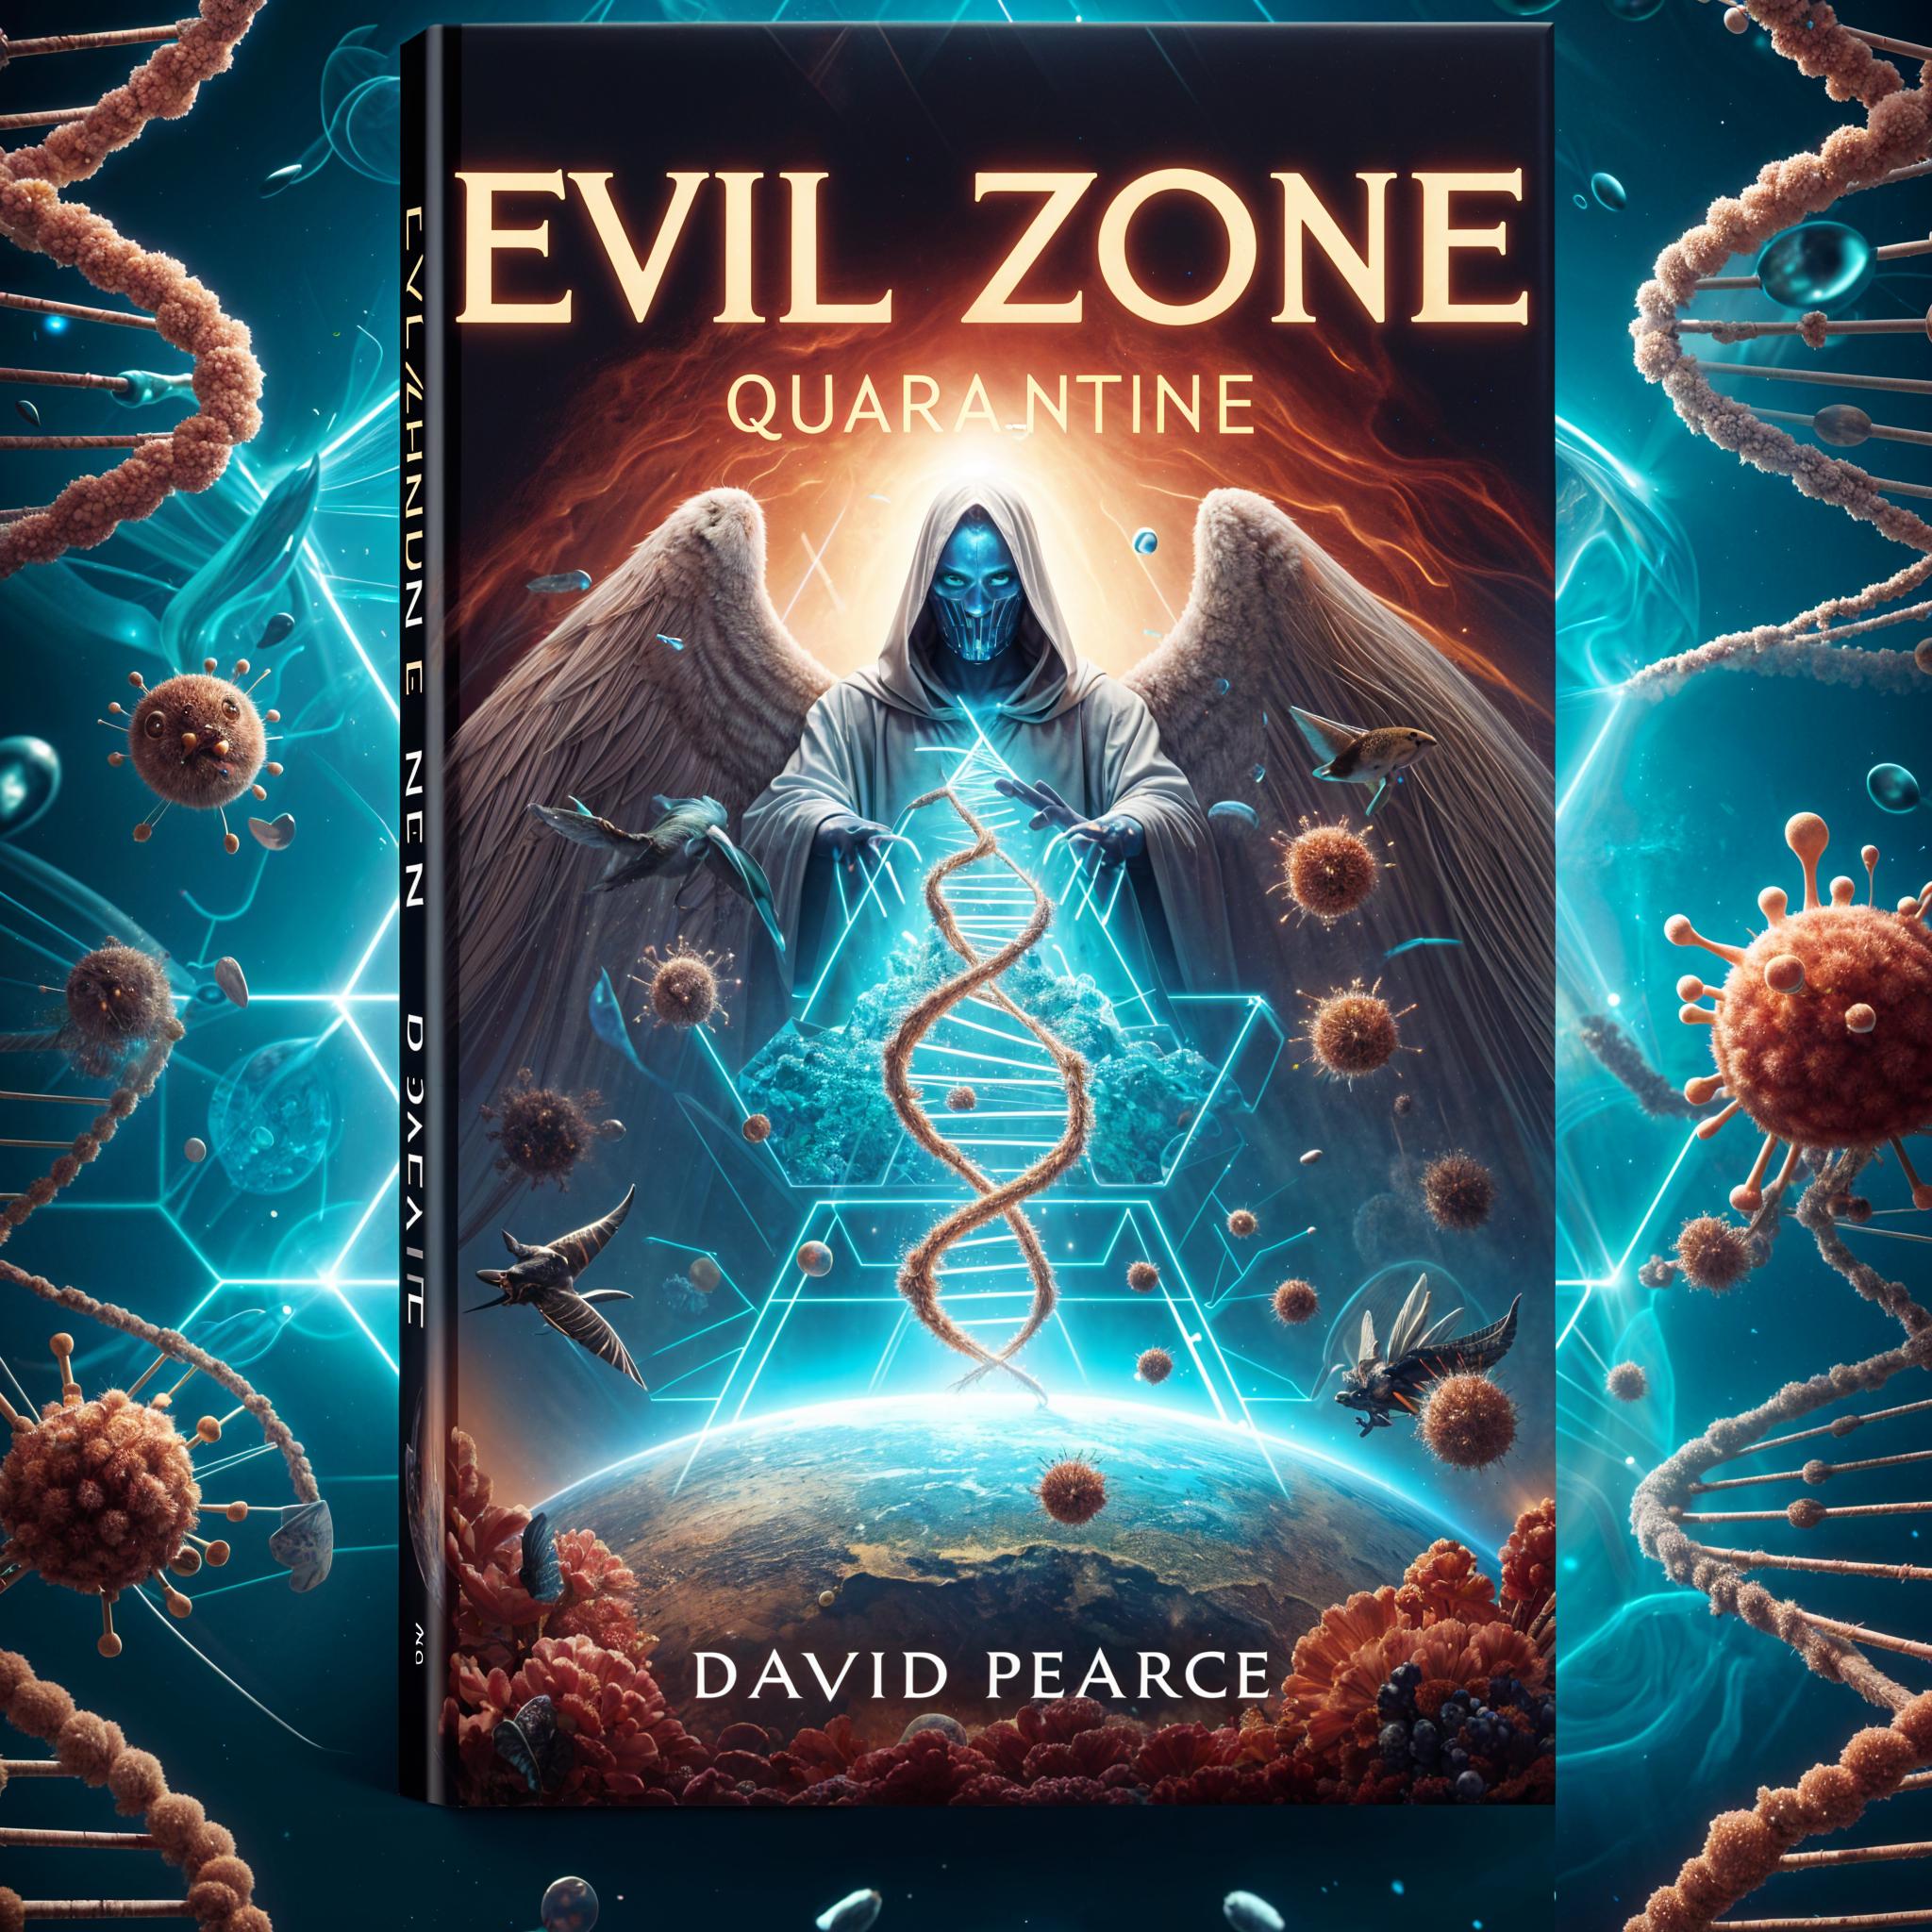 The Evil Zone: Quarantine by David Pearce